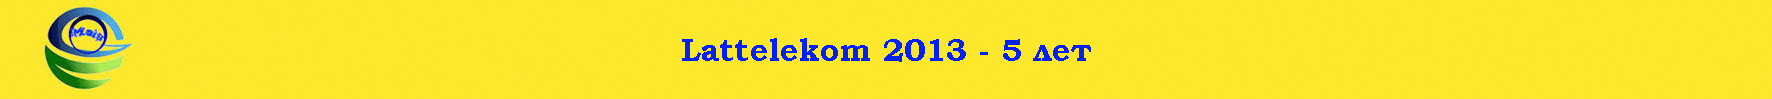 Lattelekom 2013 - 5 